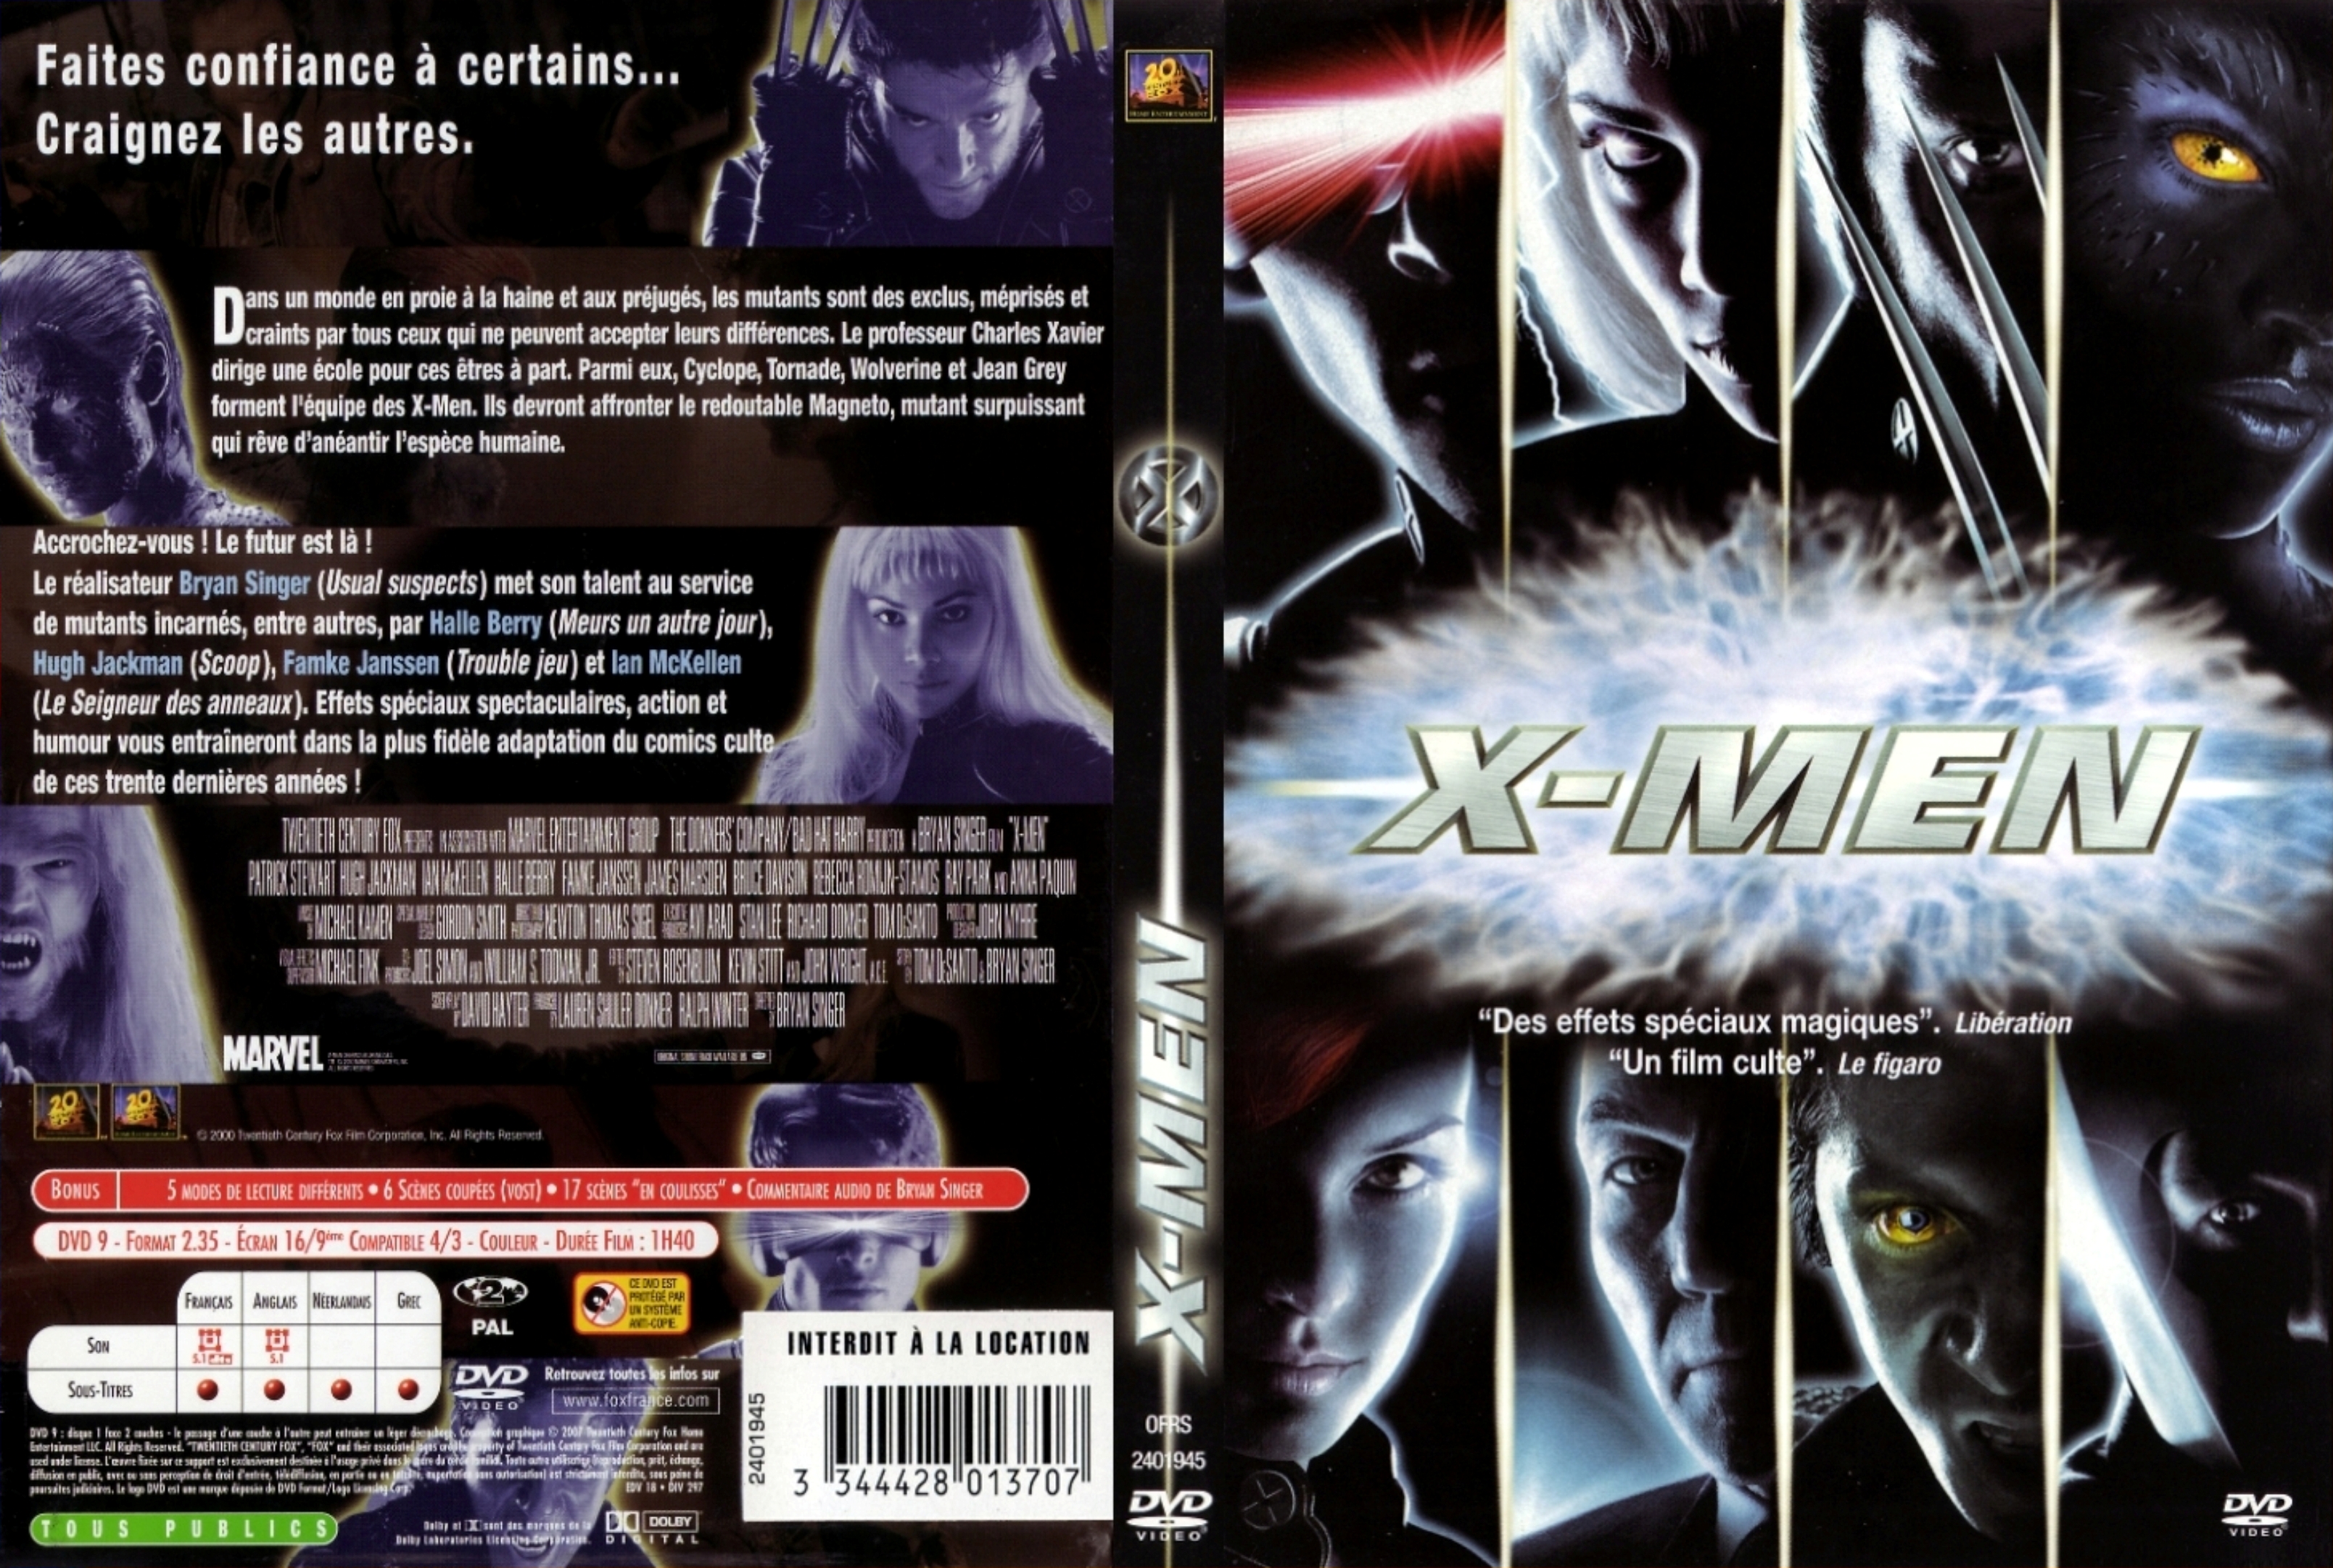 Jaquette DVD X-men v4